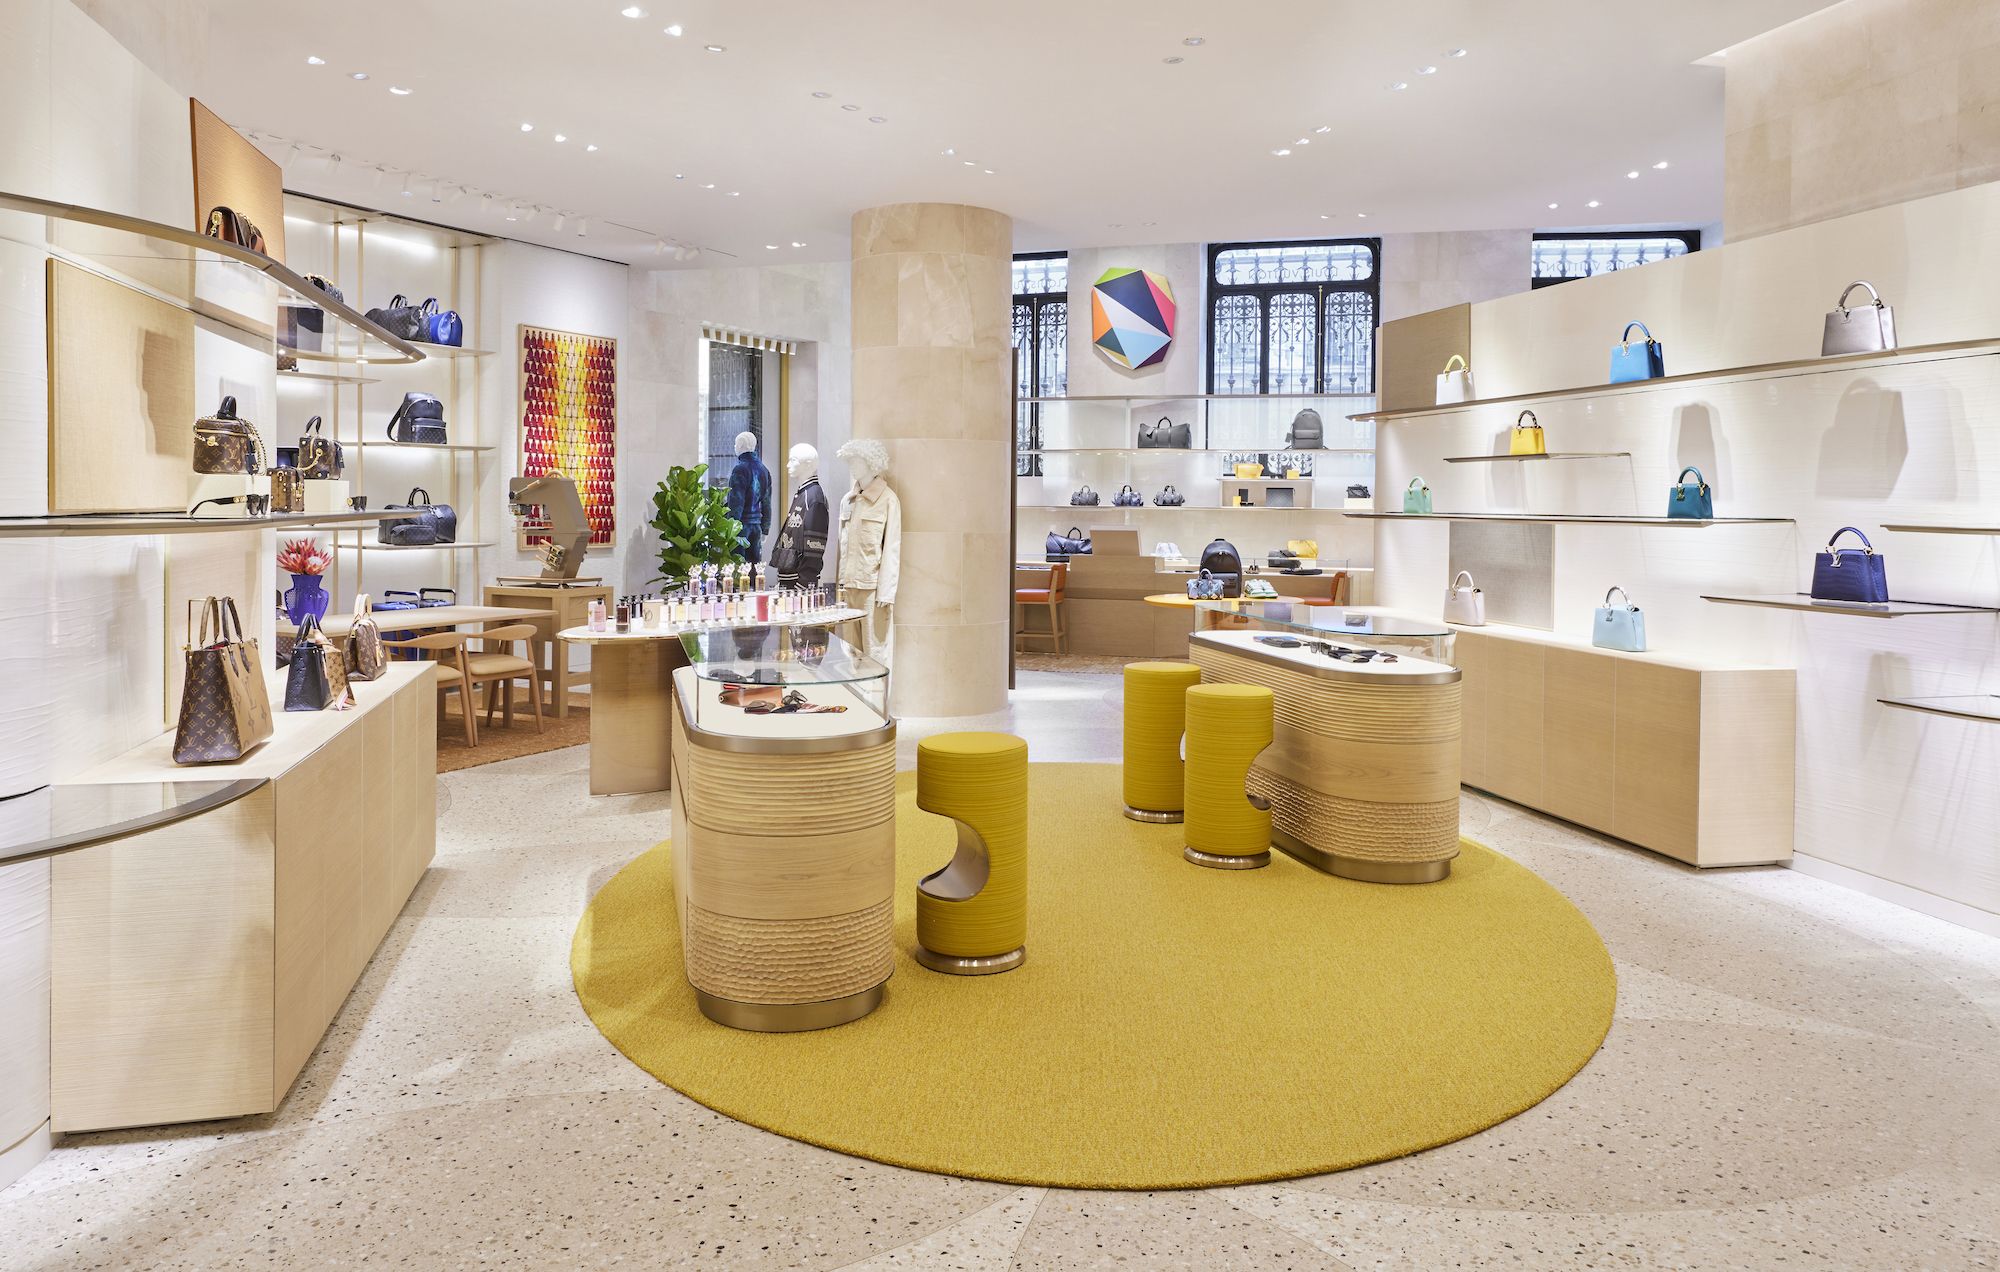 Nueva tienda Louis Vuitton en Madrid